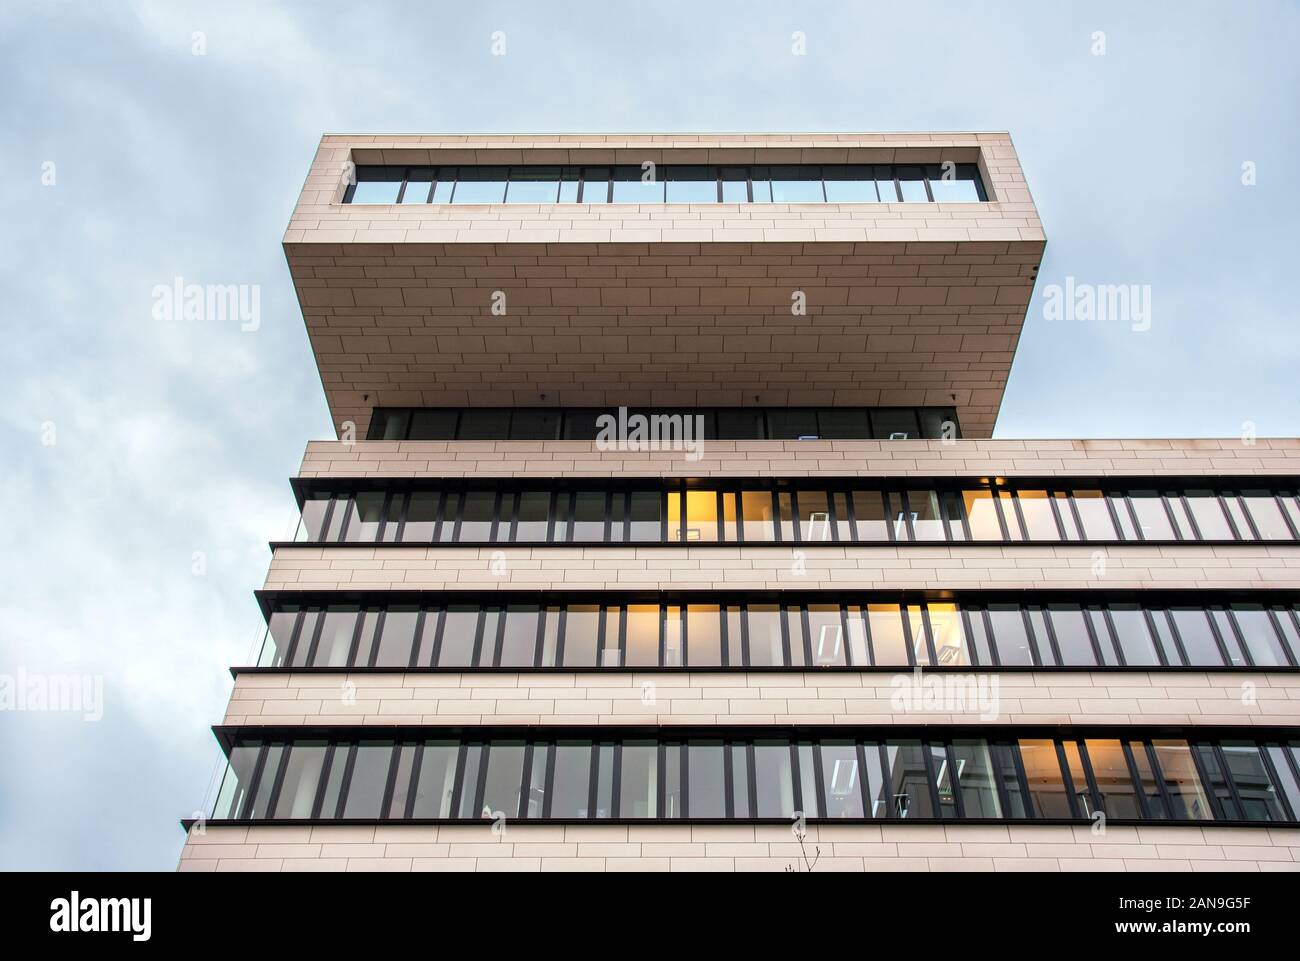 La conception de l'architecture de l'immeuble de bureaux modernes avec balcon sur le haut, vu de l'angle faible contre ciel nuageux Banque D'Images